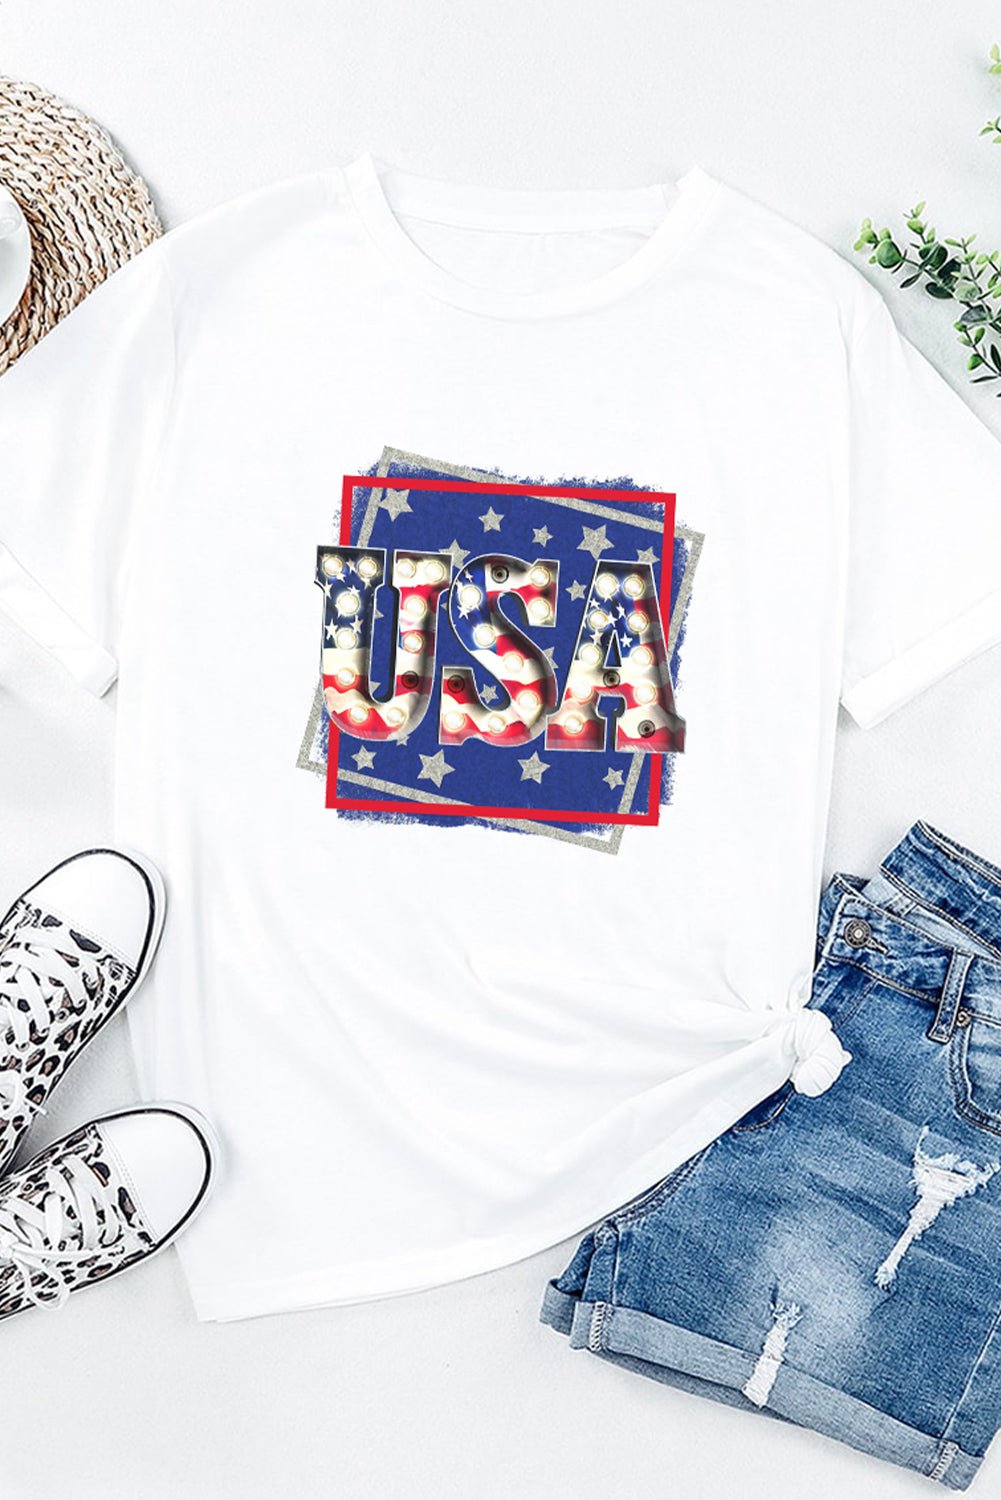 USA Graphic Round Neck Tee Shirt - OMG! Rose